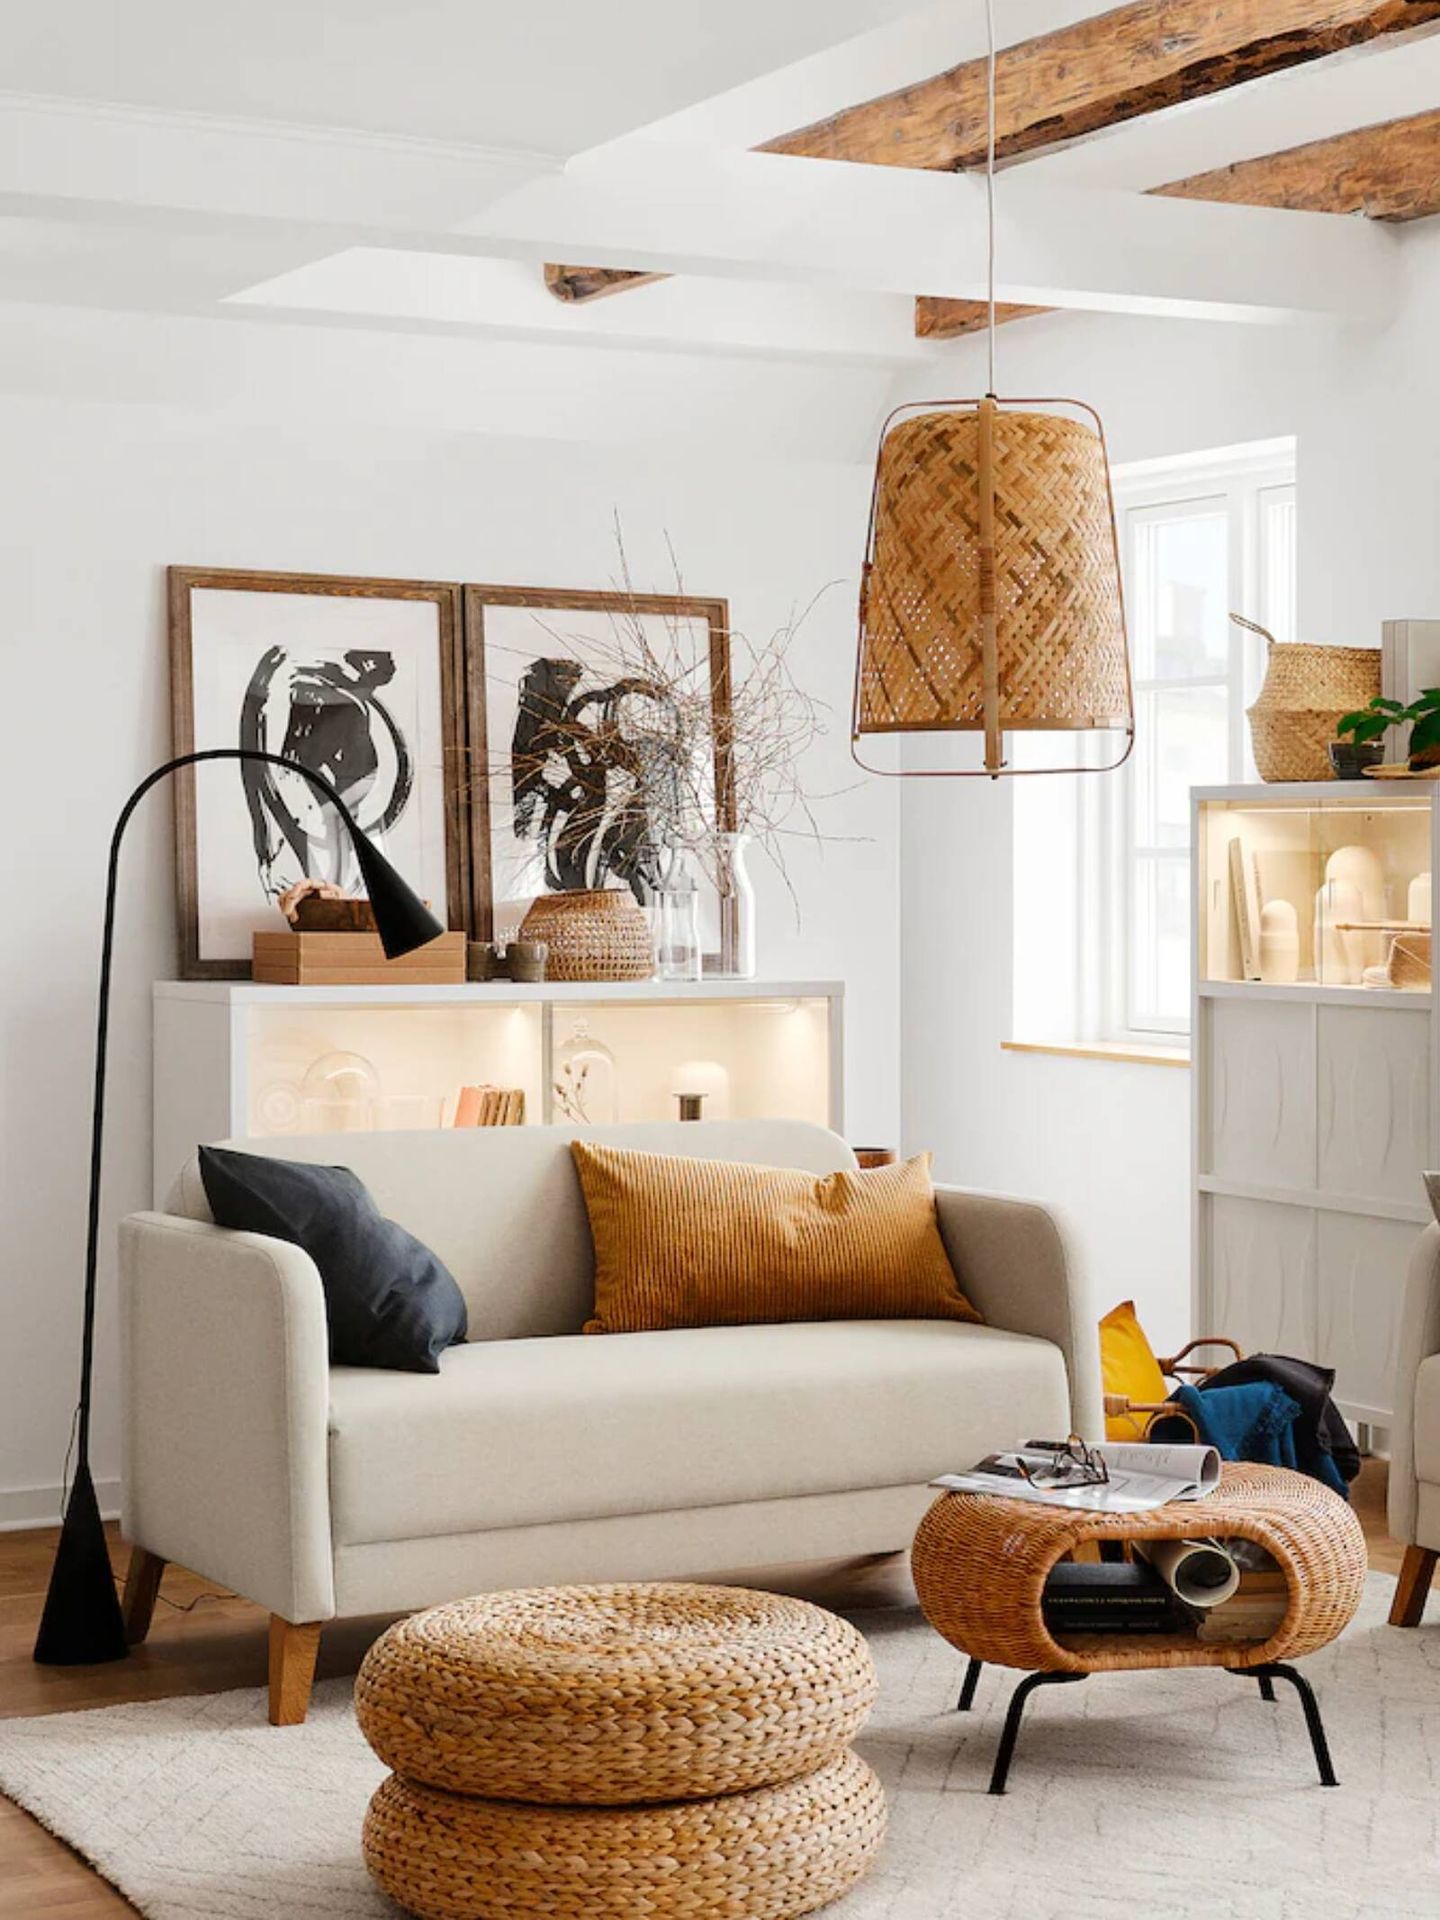 El nuevo sofá de Ikea, el mueble ideal para casas y salones pequeños. (Cortesía)